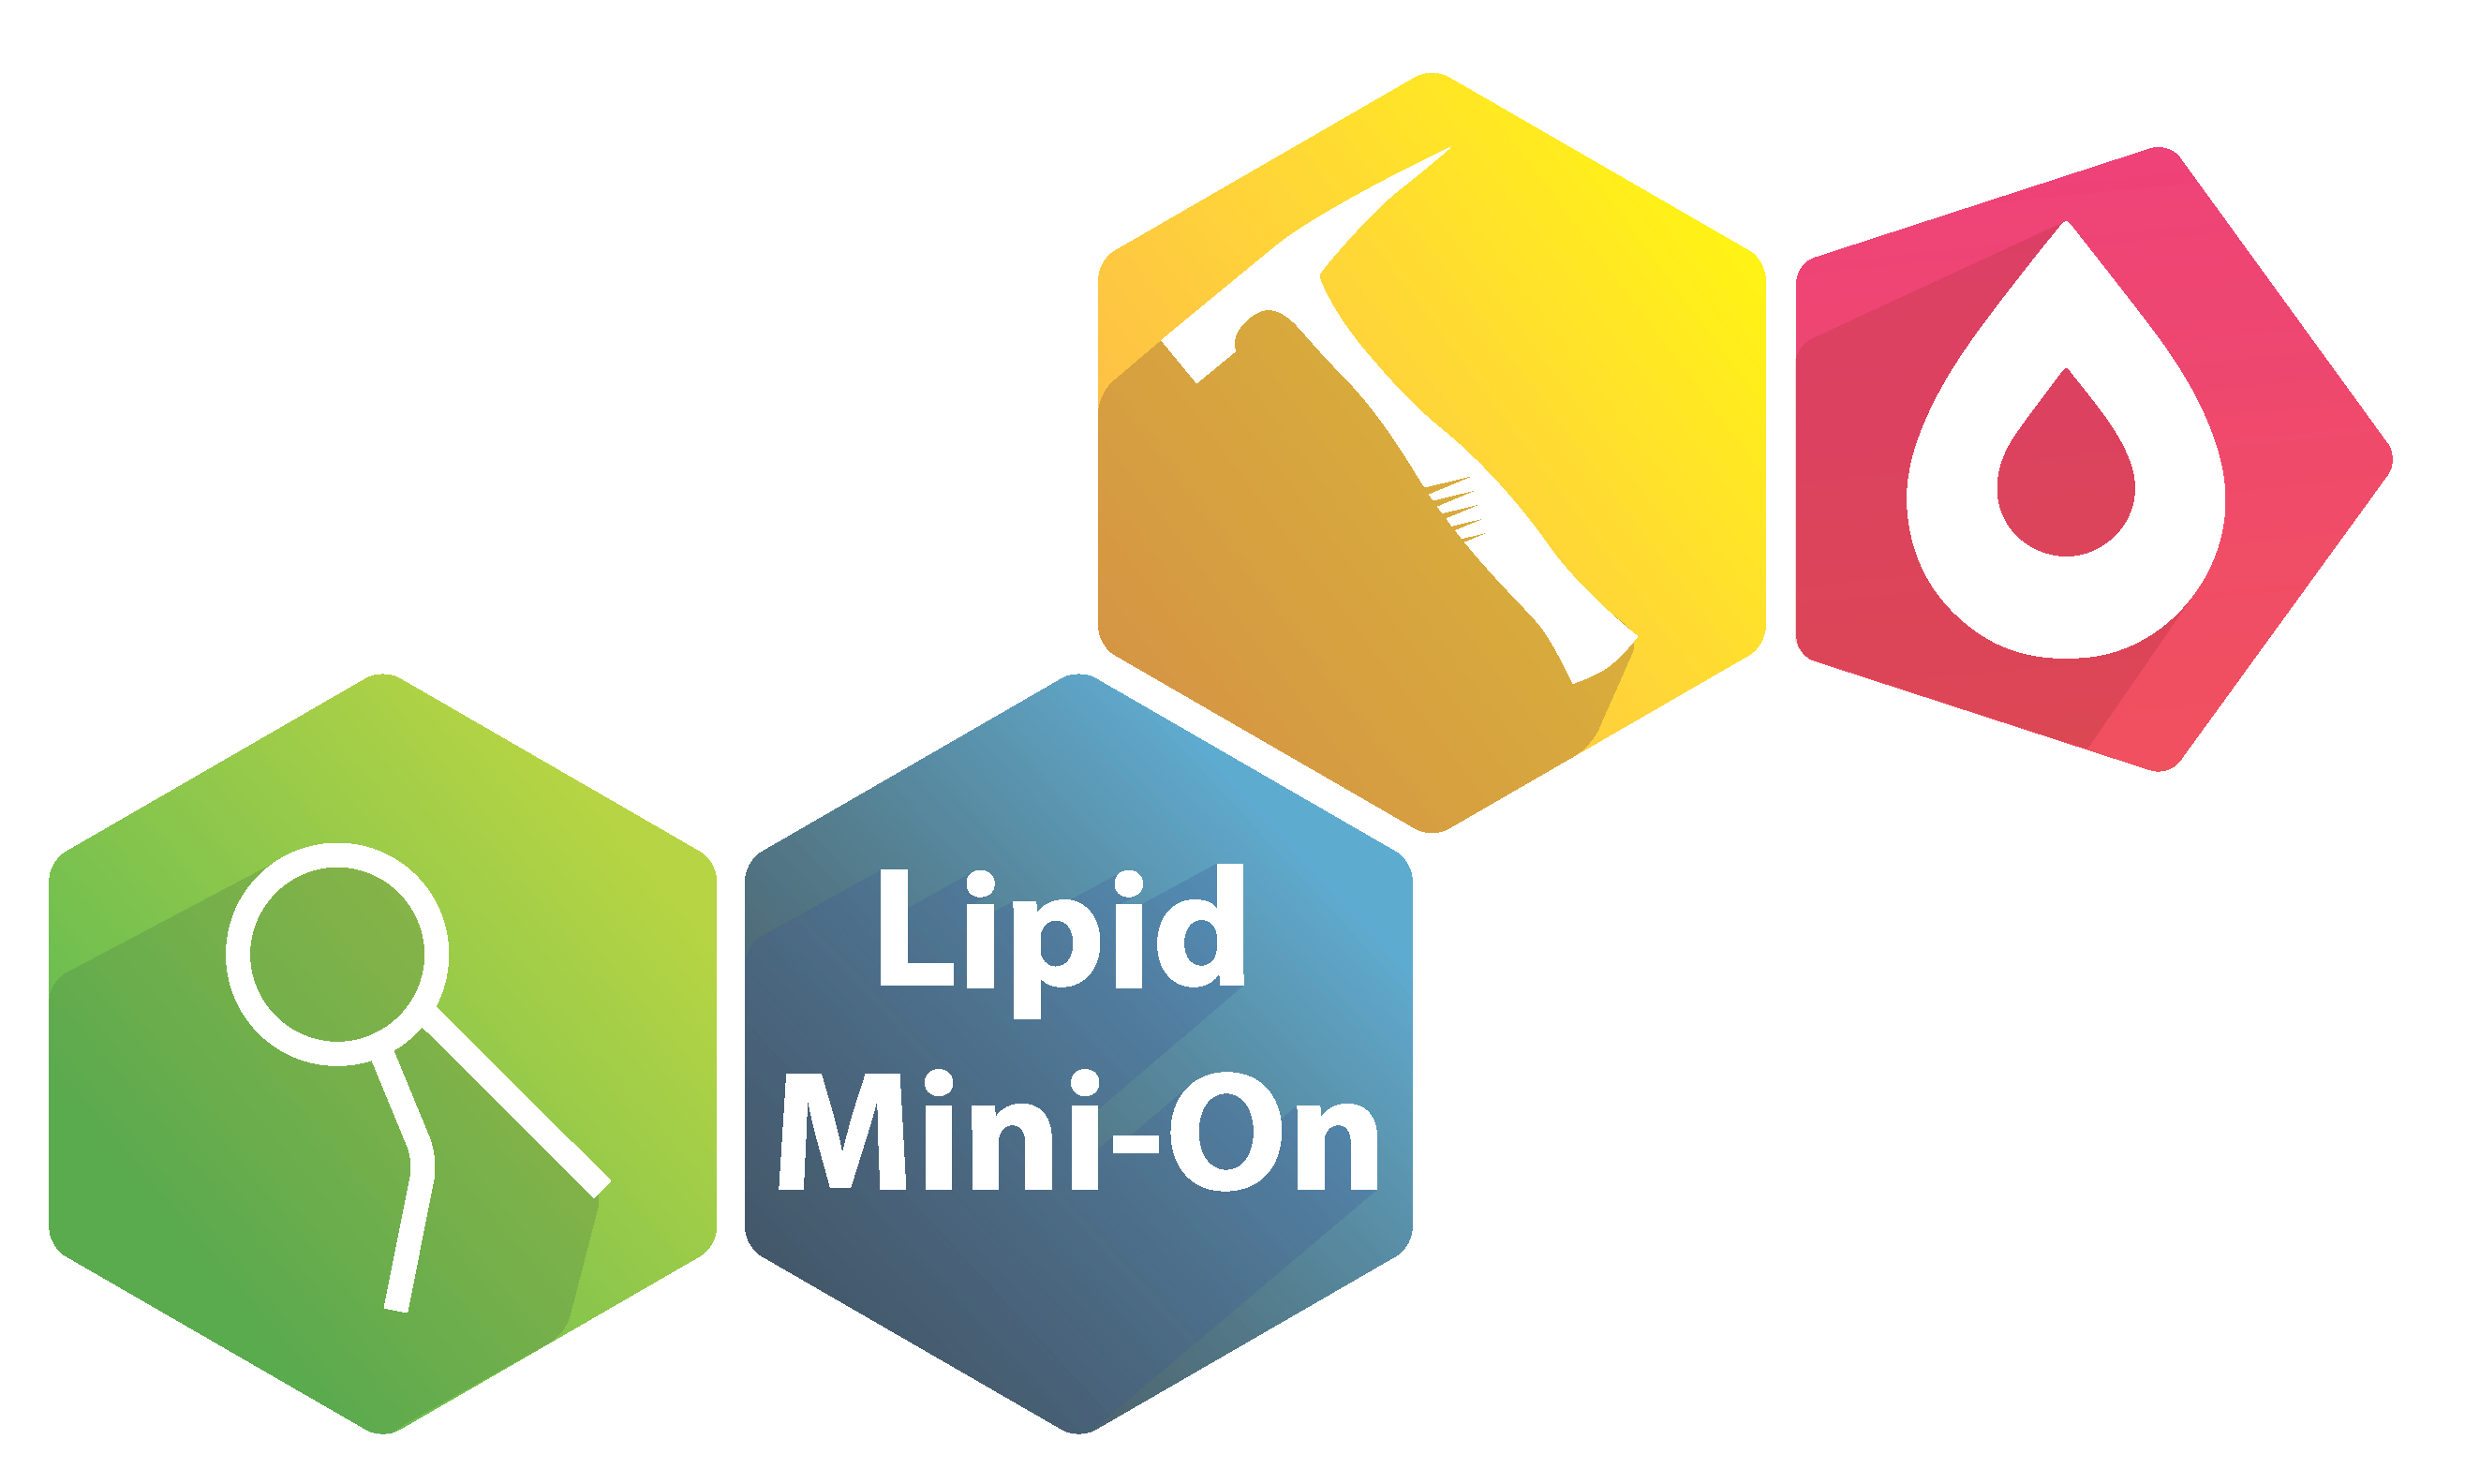 Lipid Mini-On logo